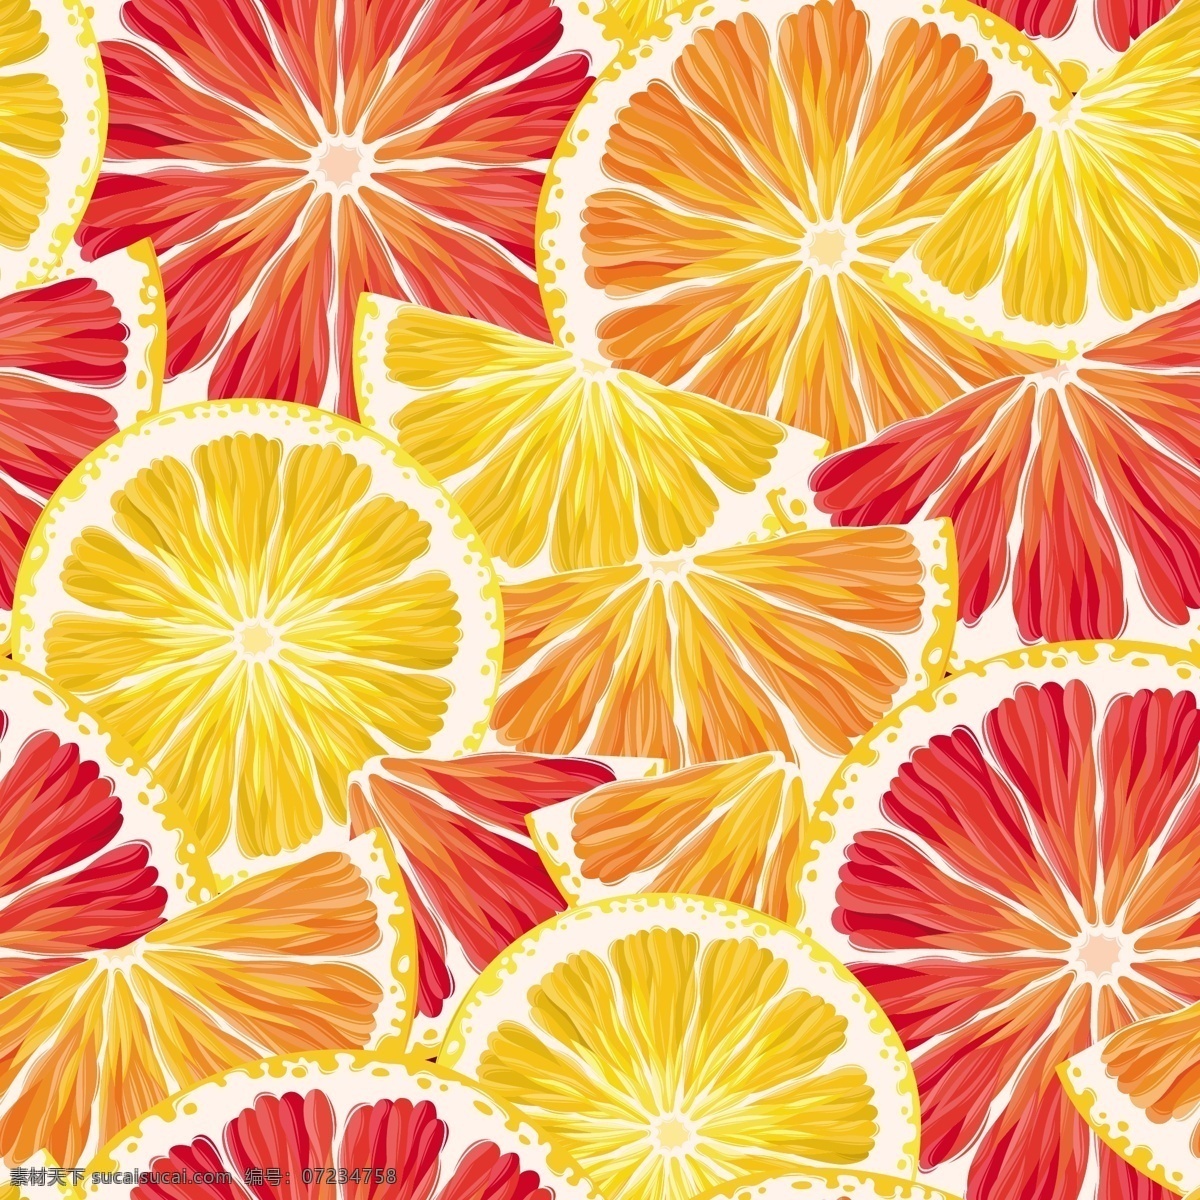 创意 柠檬 西 柚 切片 创意柠檬 西柚切片 无缝背景素材 食物 西柚 水果 无缝背景 血橙